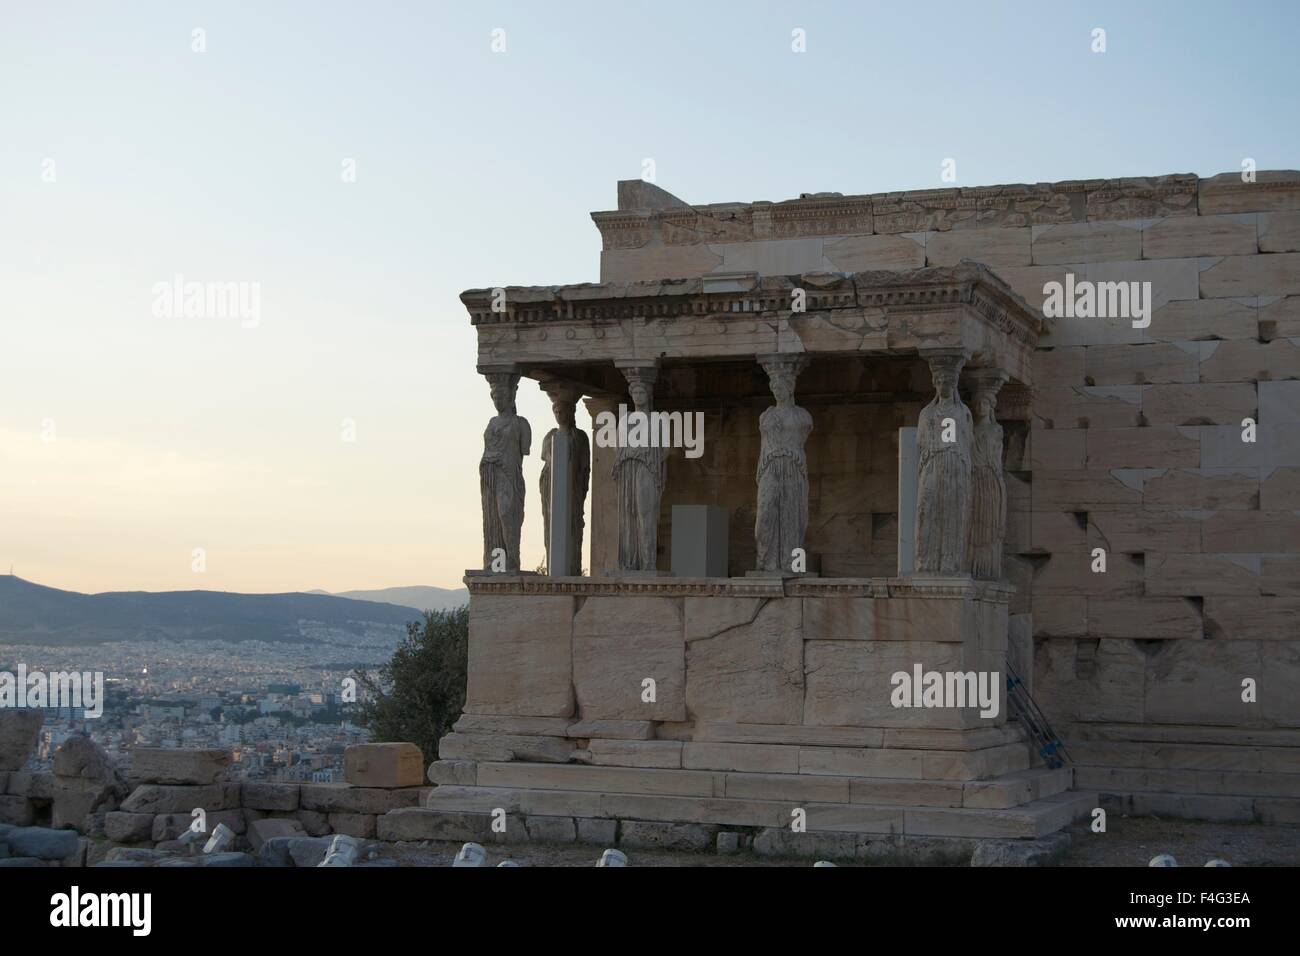 Erechtheion Acropolis Greek temple architecture Stock Photo